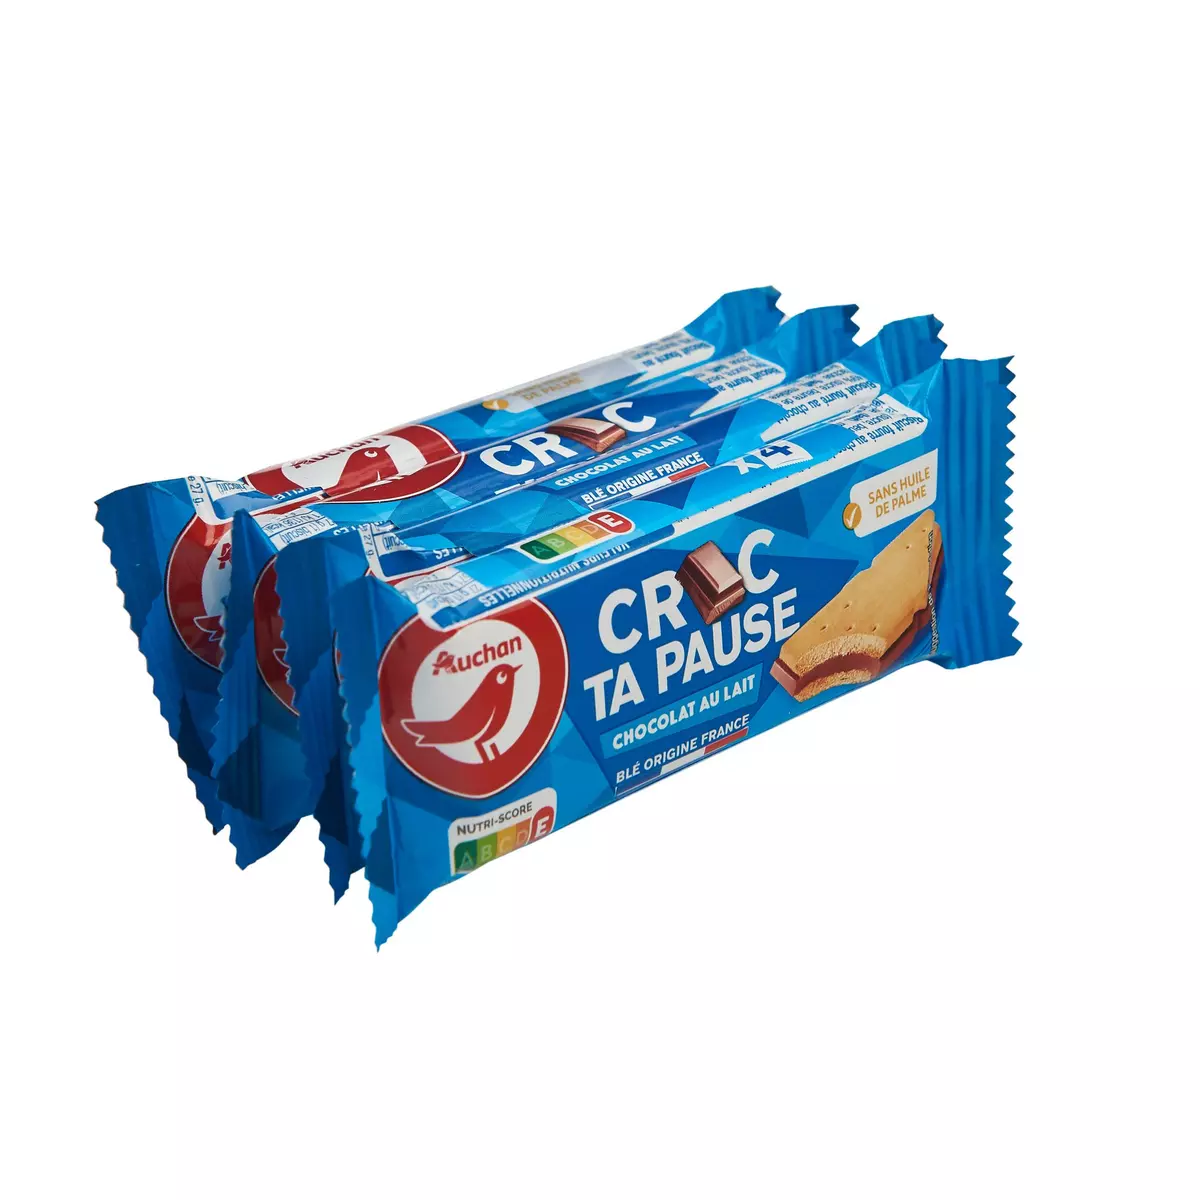 AUCHAN Croc ta pause Biscuit avec barre de chocolat sachets individuels 4 pièces 108g